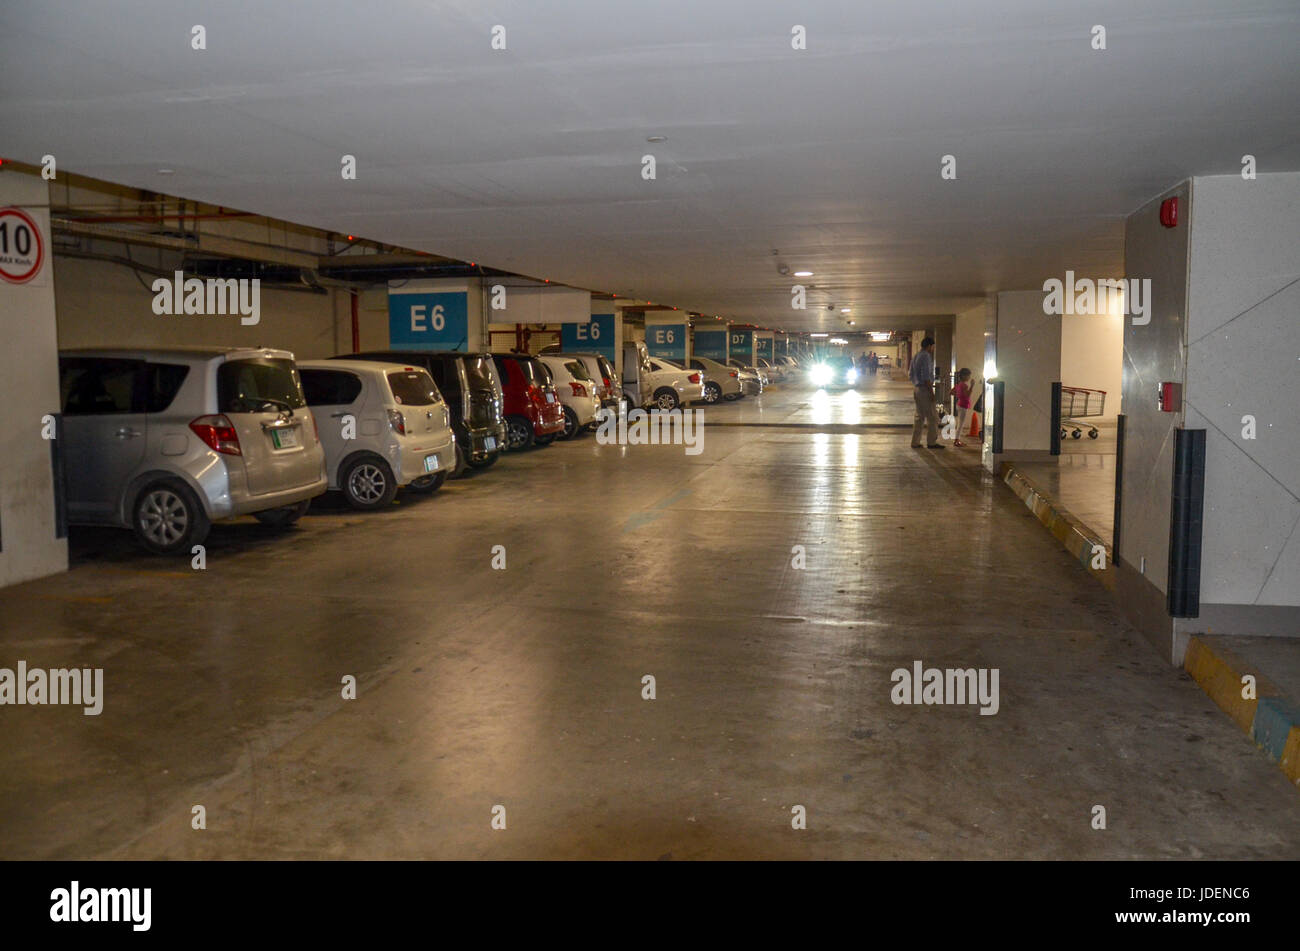 Parking gratuit, parking souterrain du centre commercial Emporium, Lahore, Pakistan Banque D'Images